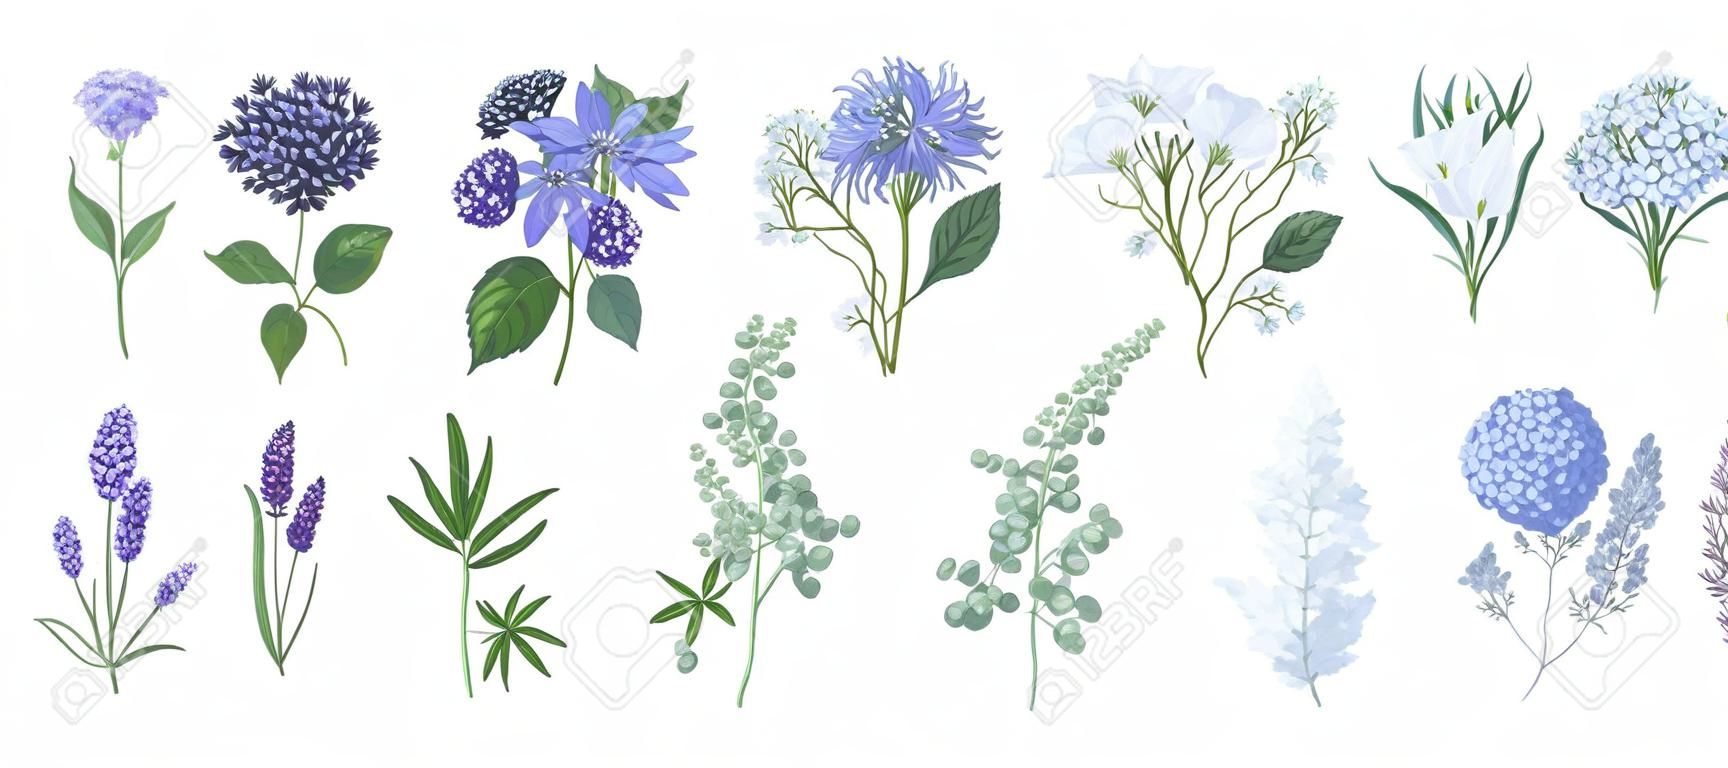 Conjunto de desenhos detalhados de belas flores florísticas e ervas decorativas isoladas no fundo branco. Conjunto de belas decorações florais e ervas. Ilustração vetorial botânica desenhada à mão.